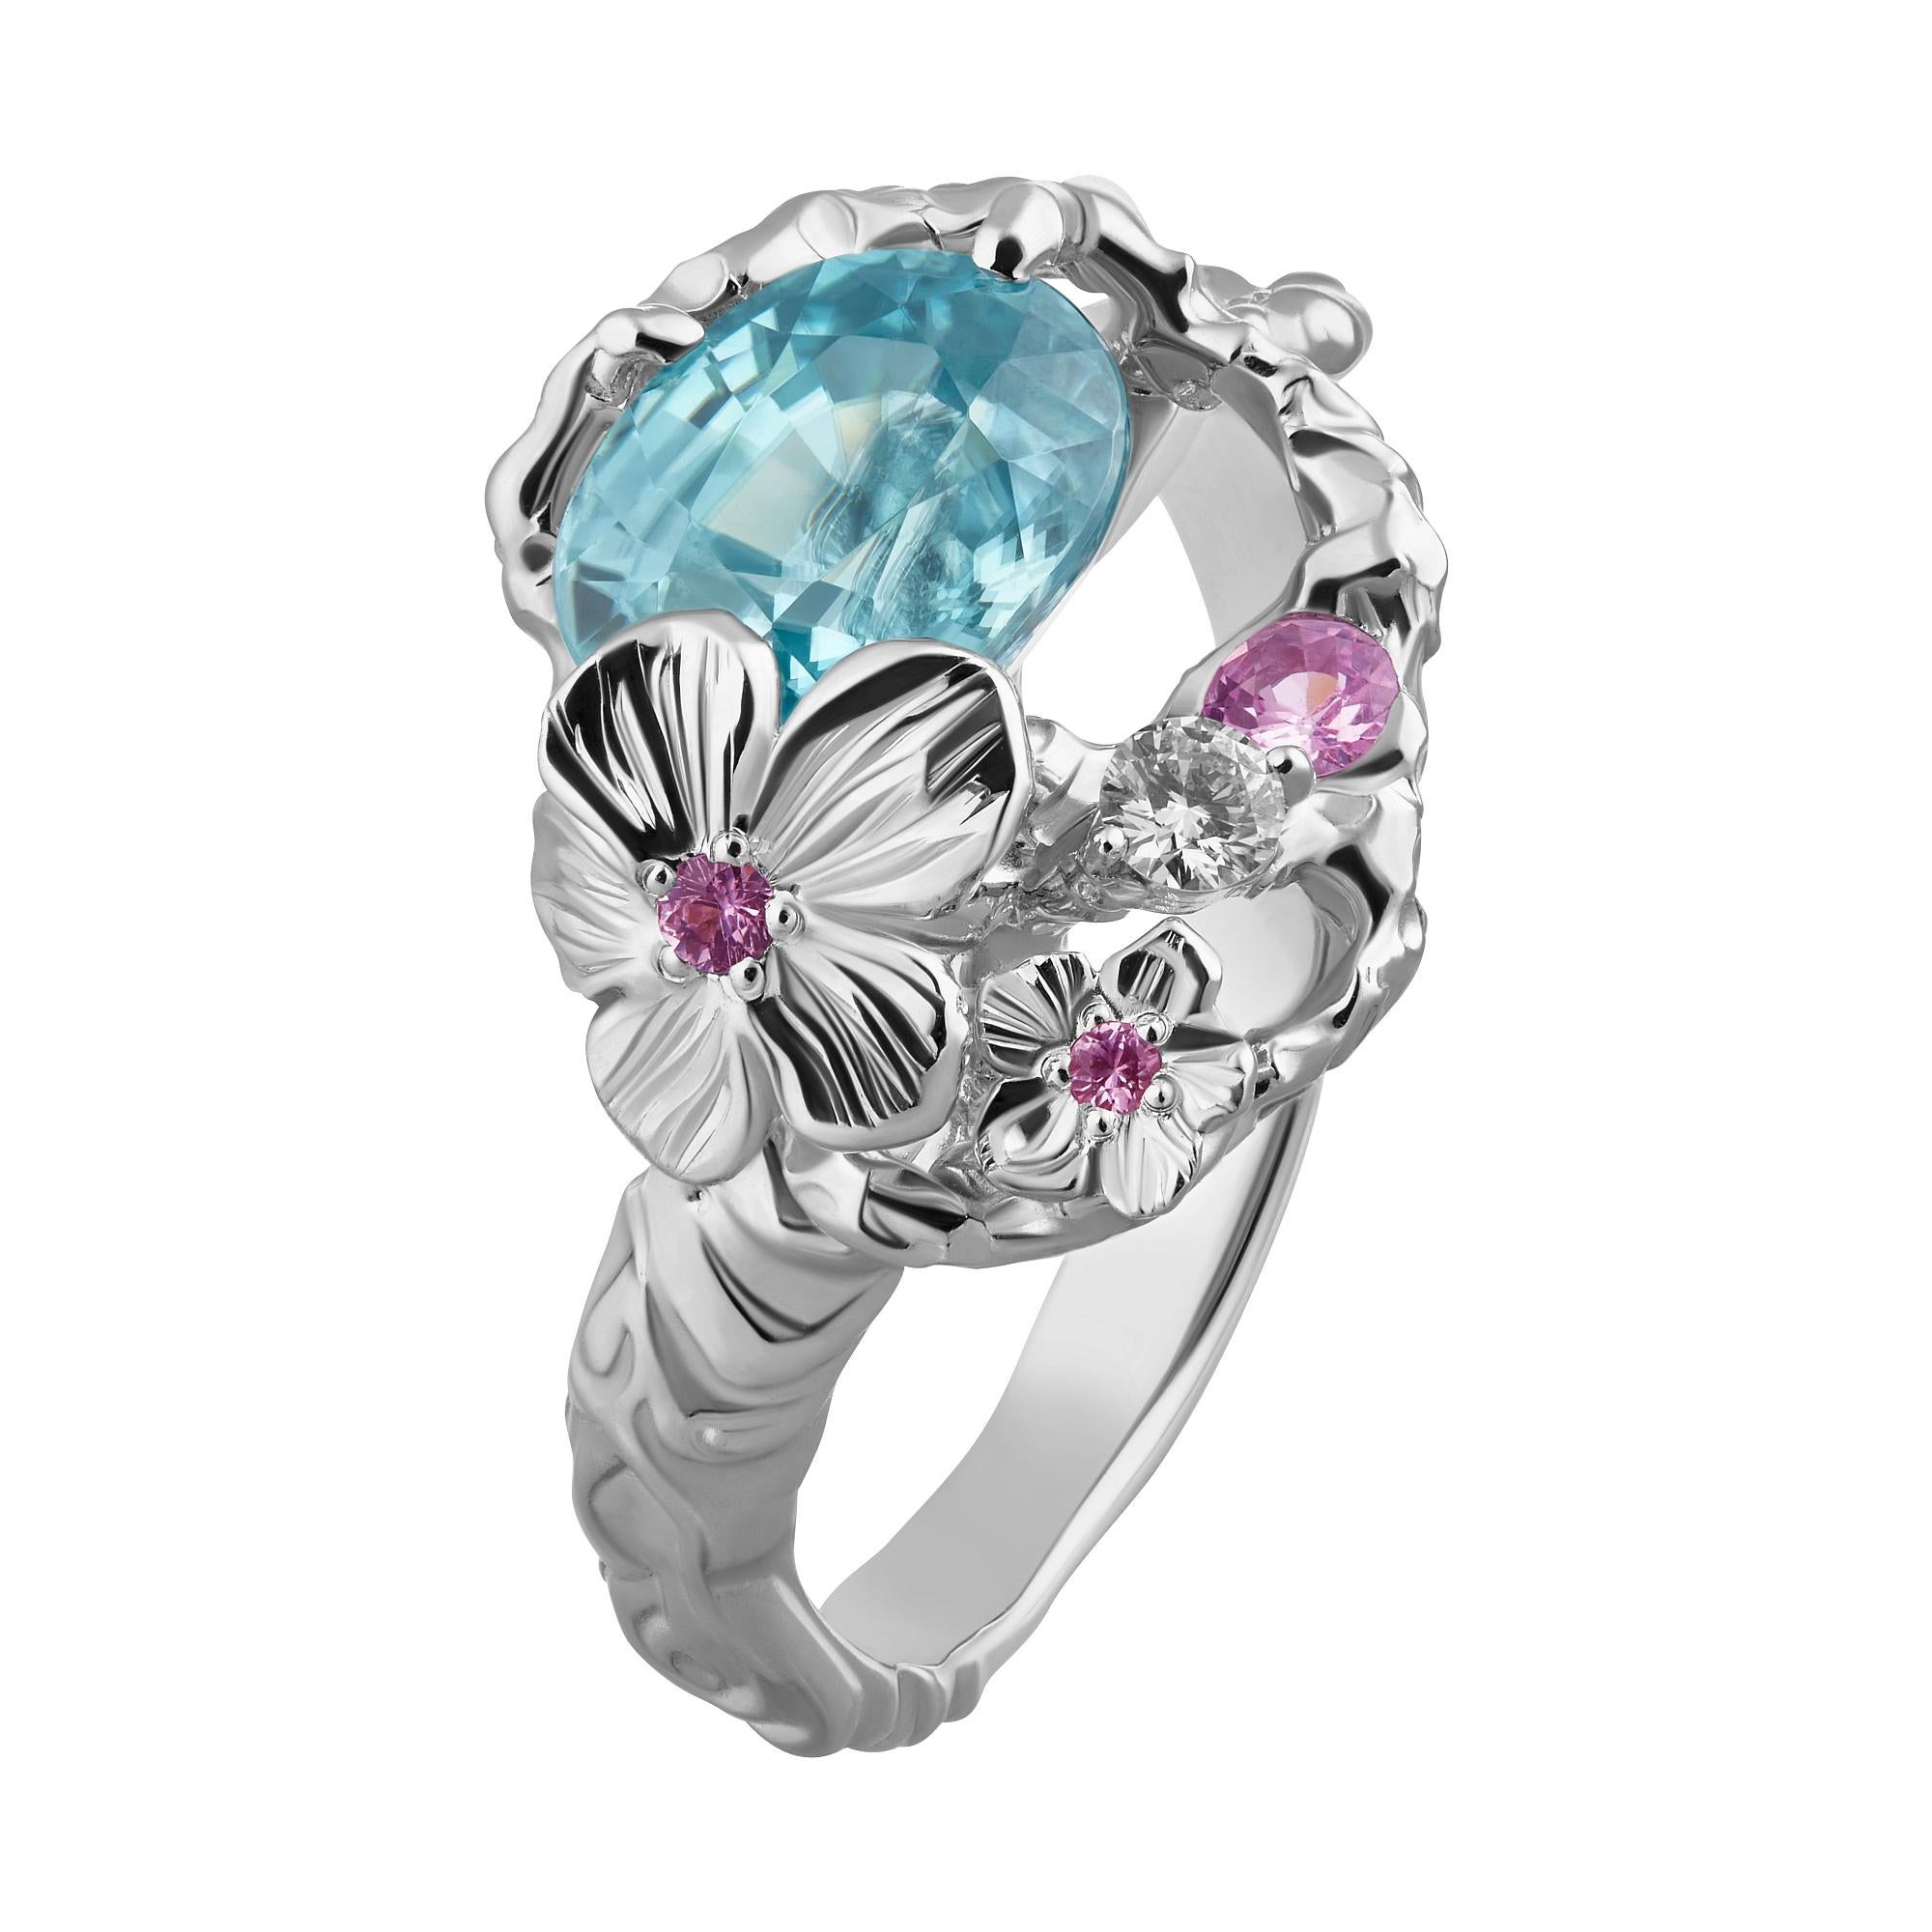 Cette bague faite main avec un Zircon naturel bleu ciel, des diamants éblouissants et des saphirs couleur rose très tendance de MOISEIKIN🄬 rappelle le ciel bleu pagode et le conte de la Reine des Neiges. On peut aussi penser à l'océan. Le zircon